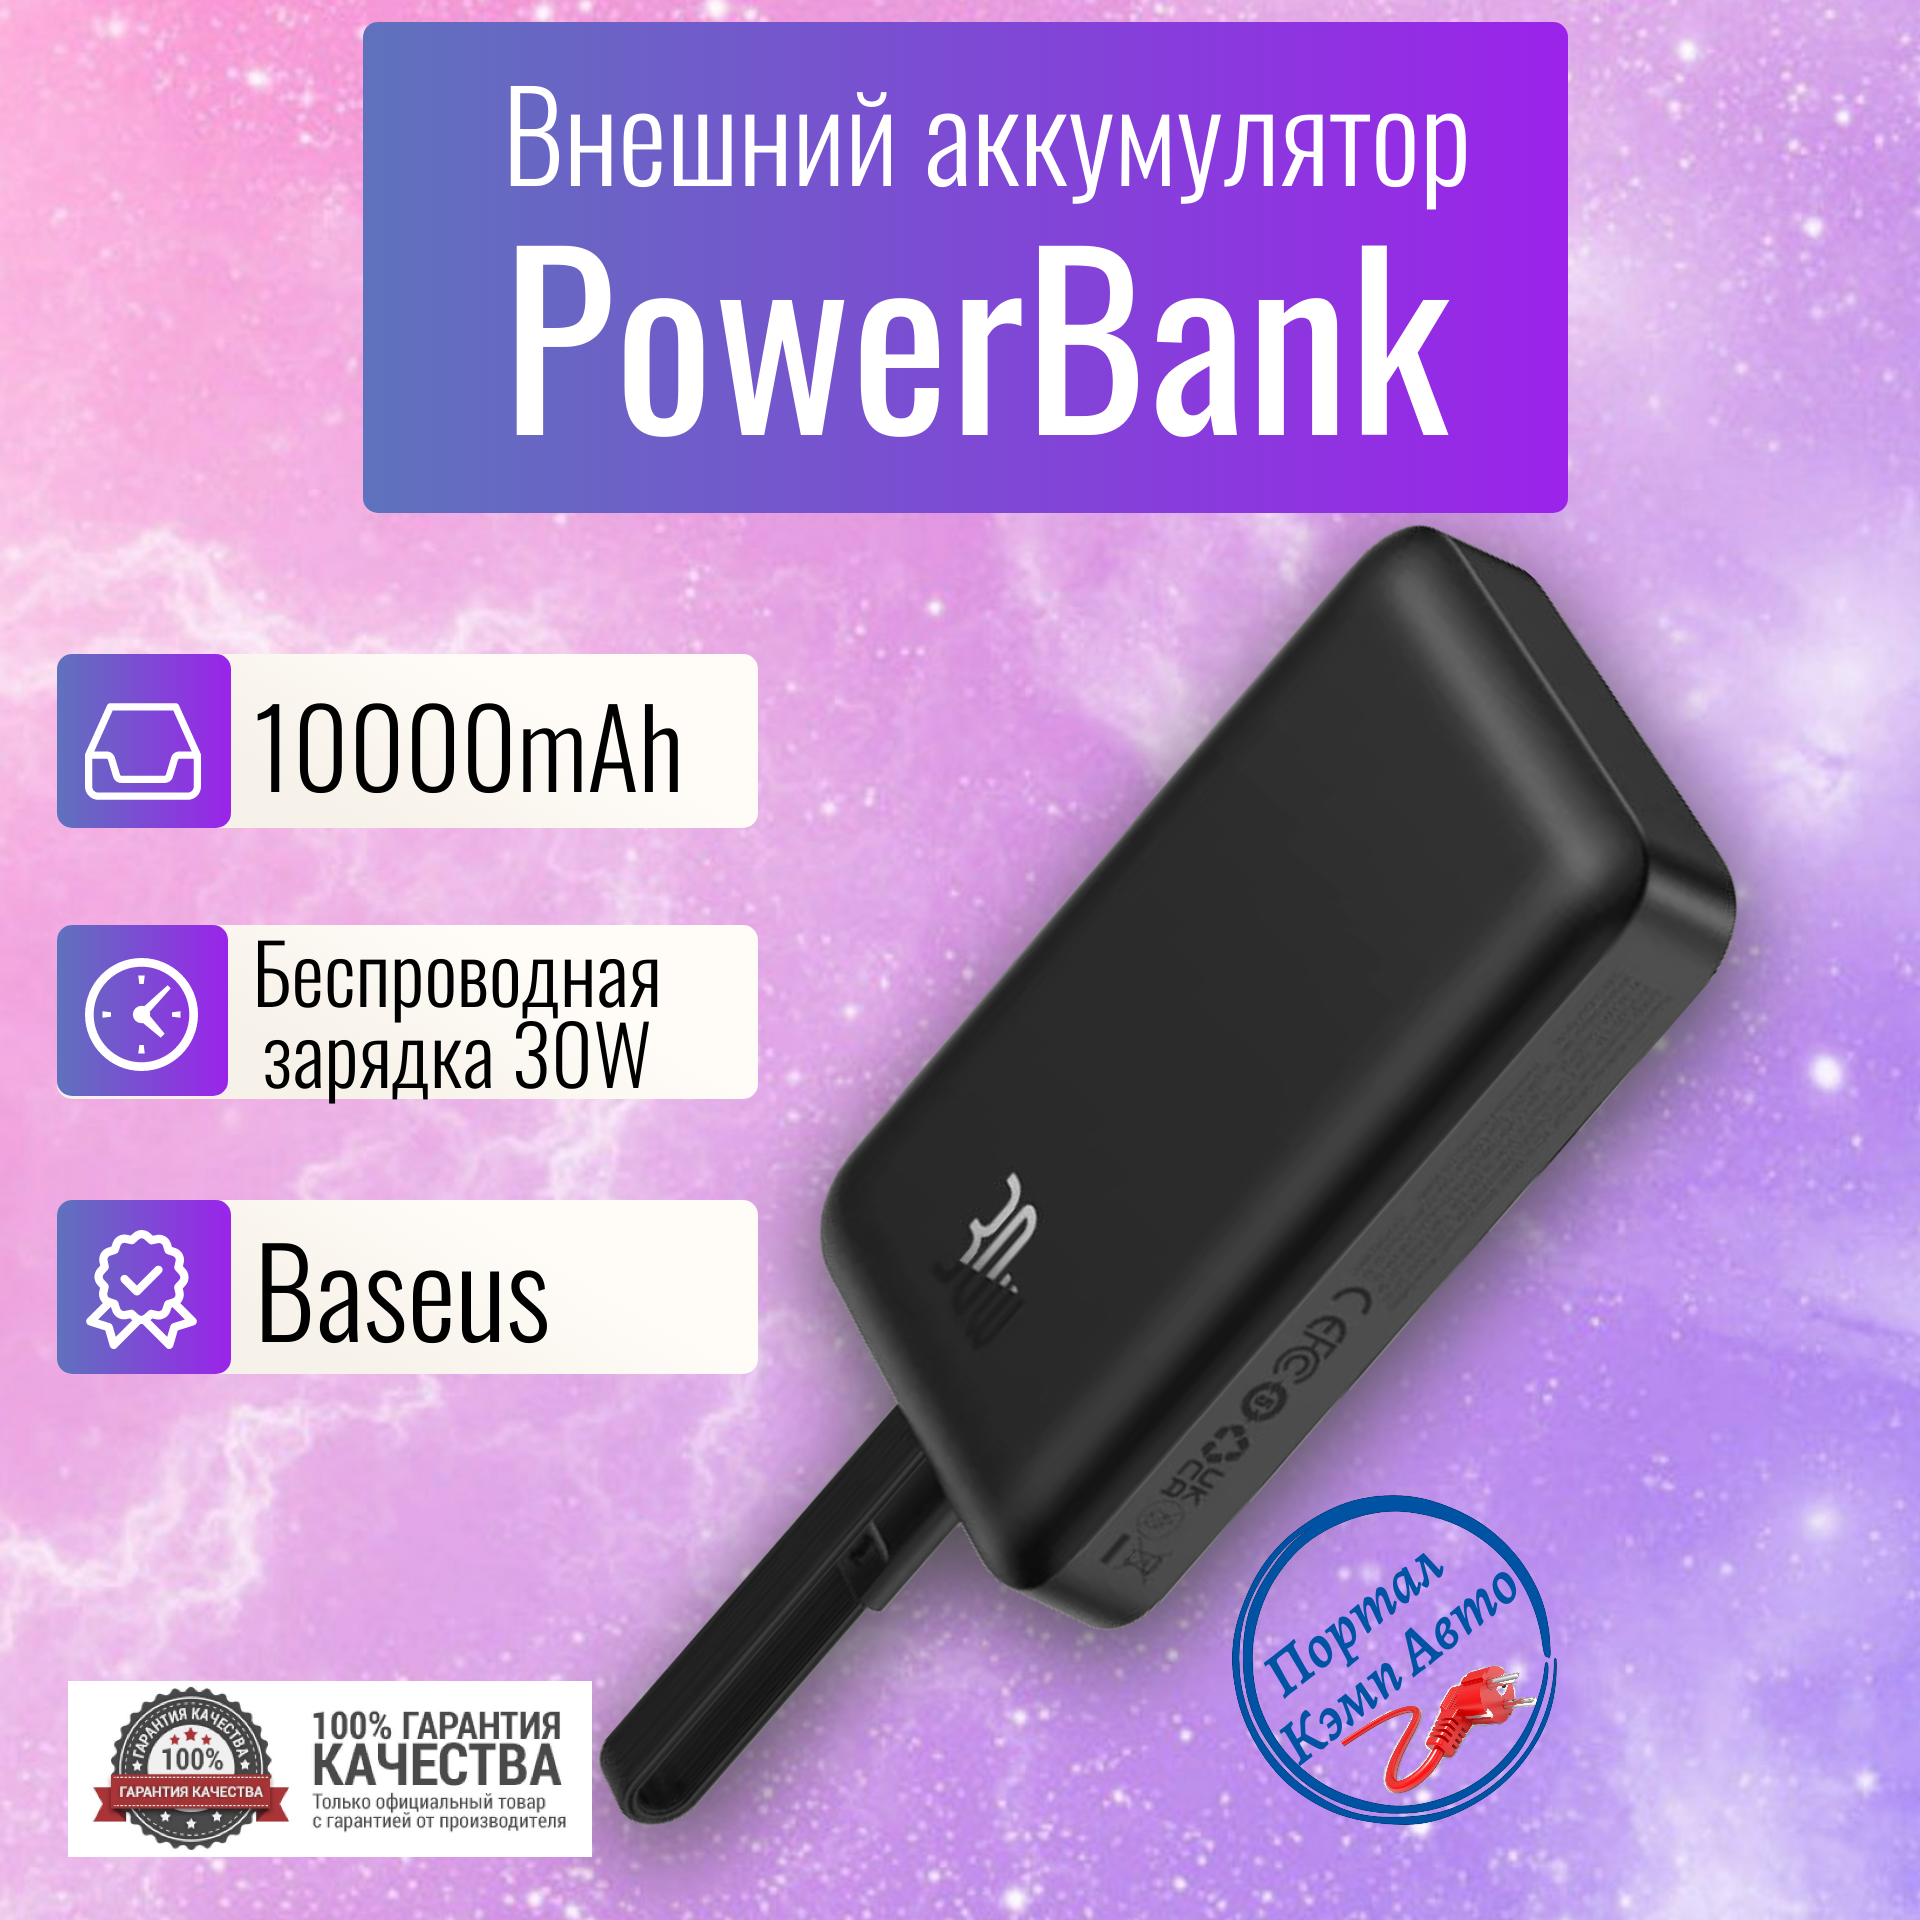 Power Bank внешний аккумулятор магнитный беспроводной MagSafe повербанк 10000 мАч 30W Baseus